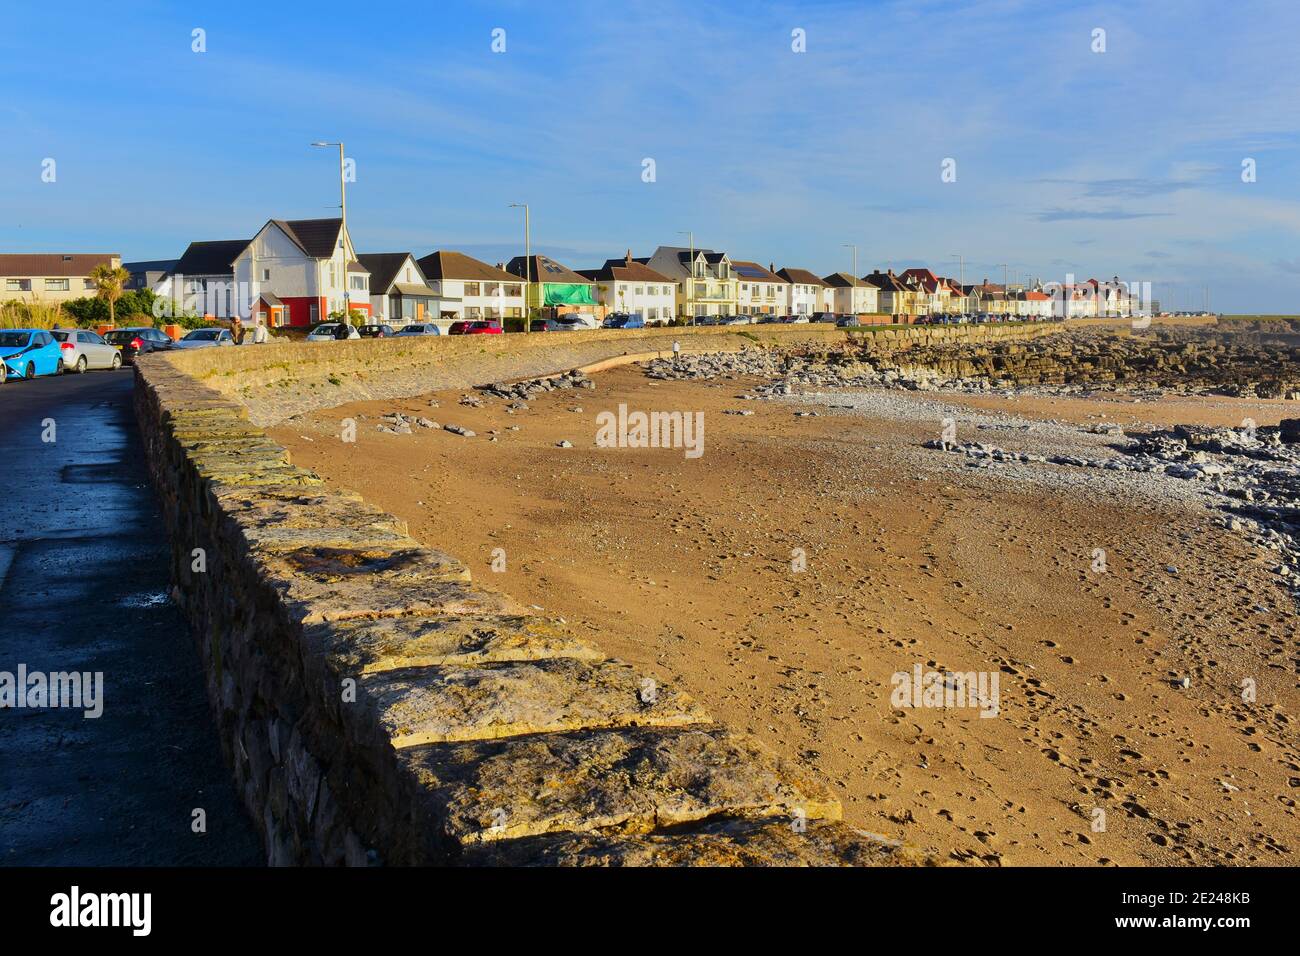 La passeggiata a Porthcarwl con case che si affacciano sul mare. A bassa marea si rivela la costa rocciosa con solo una piccola area di sabbia. Foto Stock